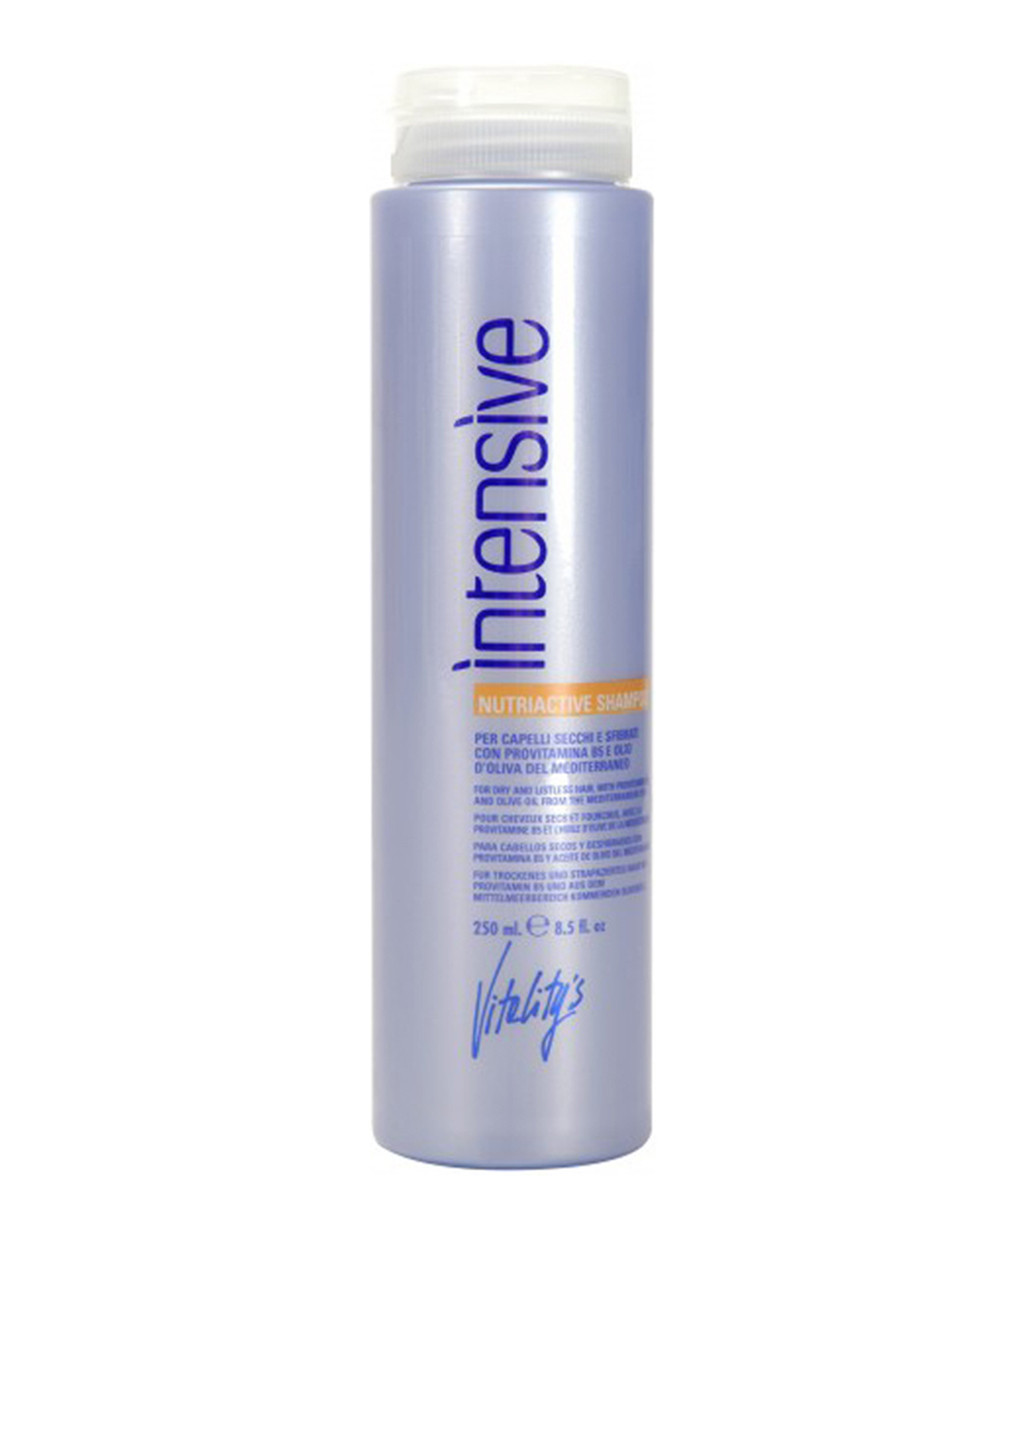 Питательный шампунь для сухих и поврежденных волос Vitality's Intensive Nutriactive Shampoo 250 мл Vitality`s (88095101)